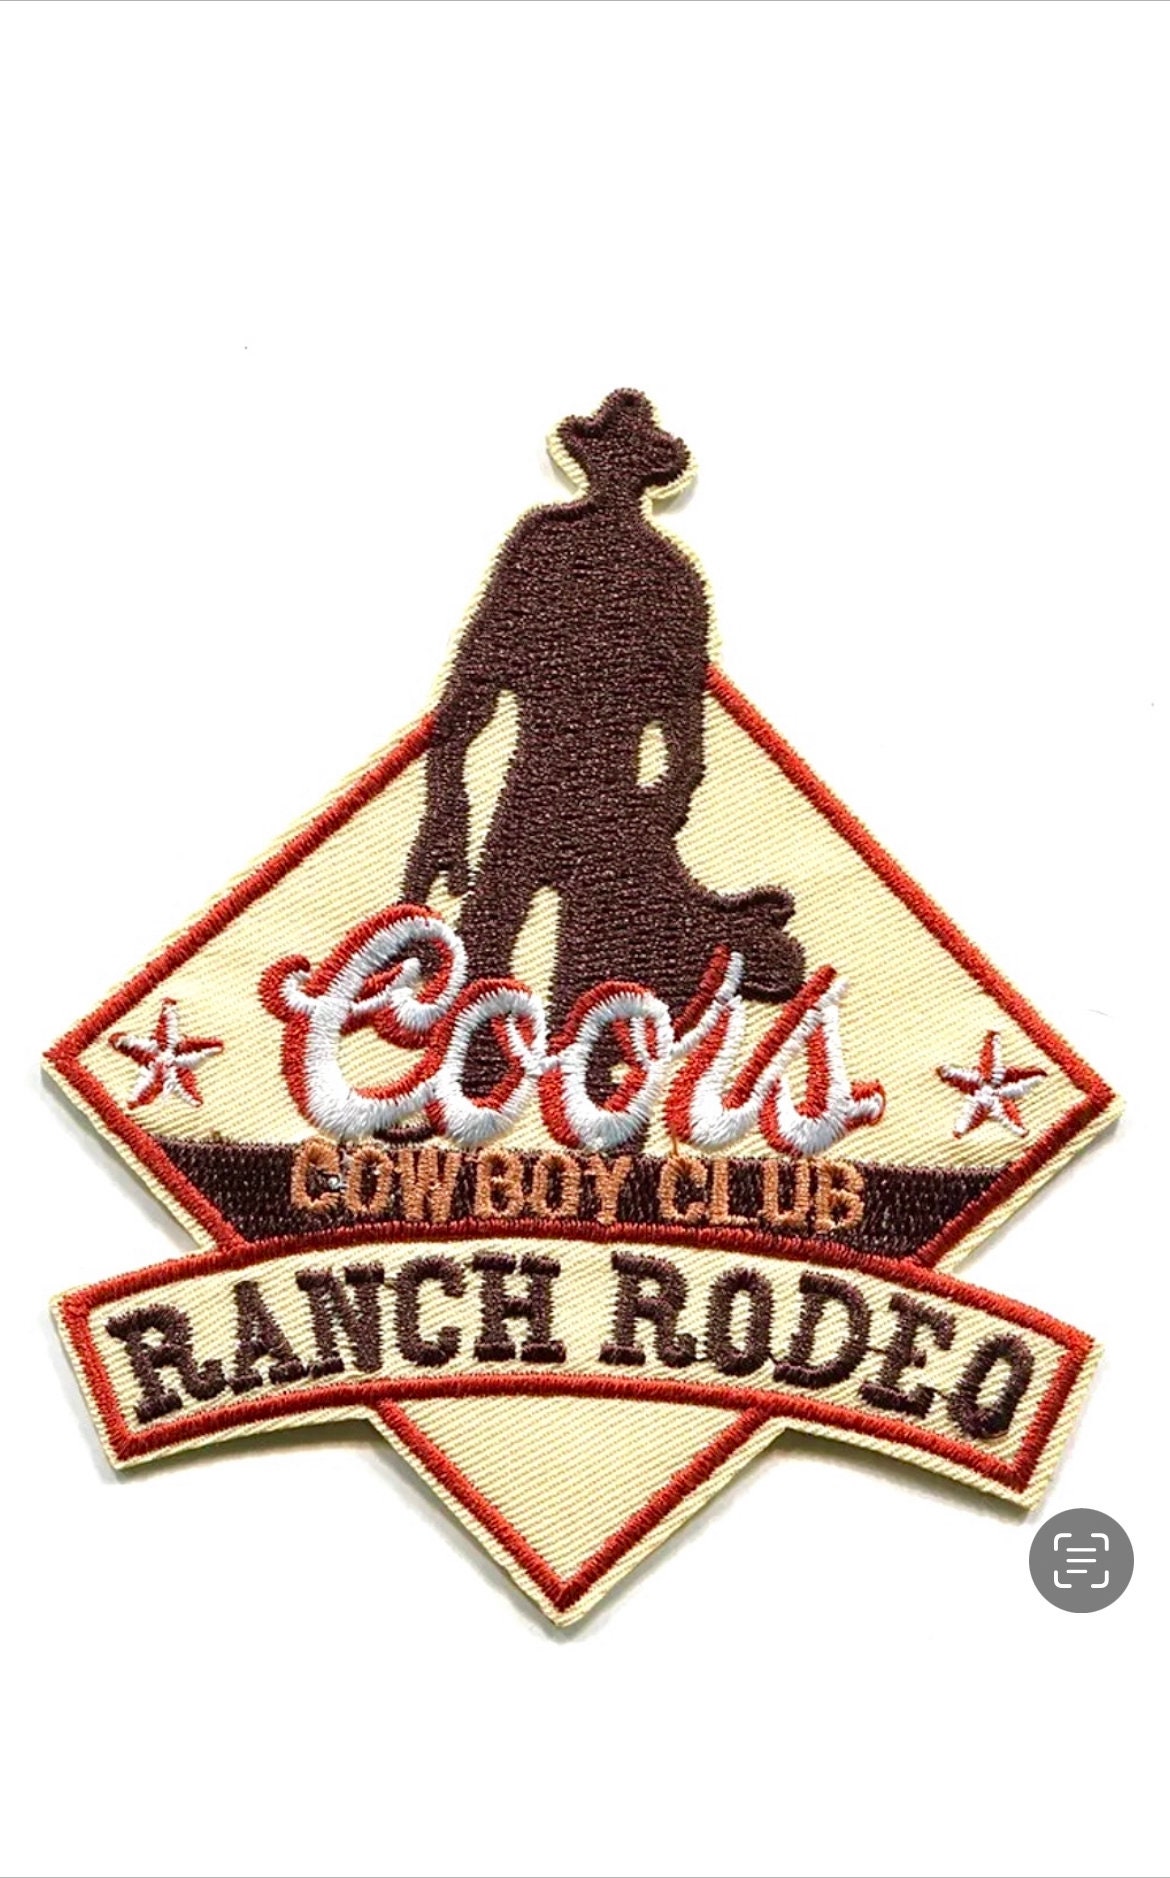 100% Leather Festa do Peão de Boiadeiro Barretos Cowboy Rodeo Sew On Patch